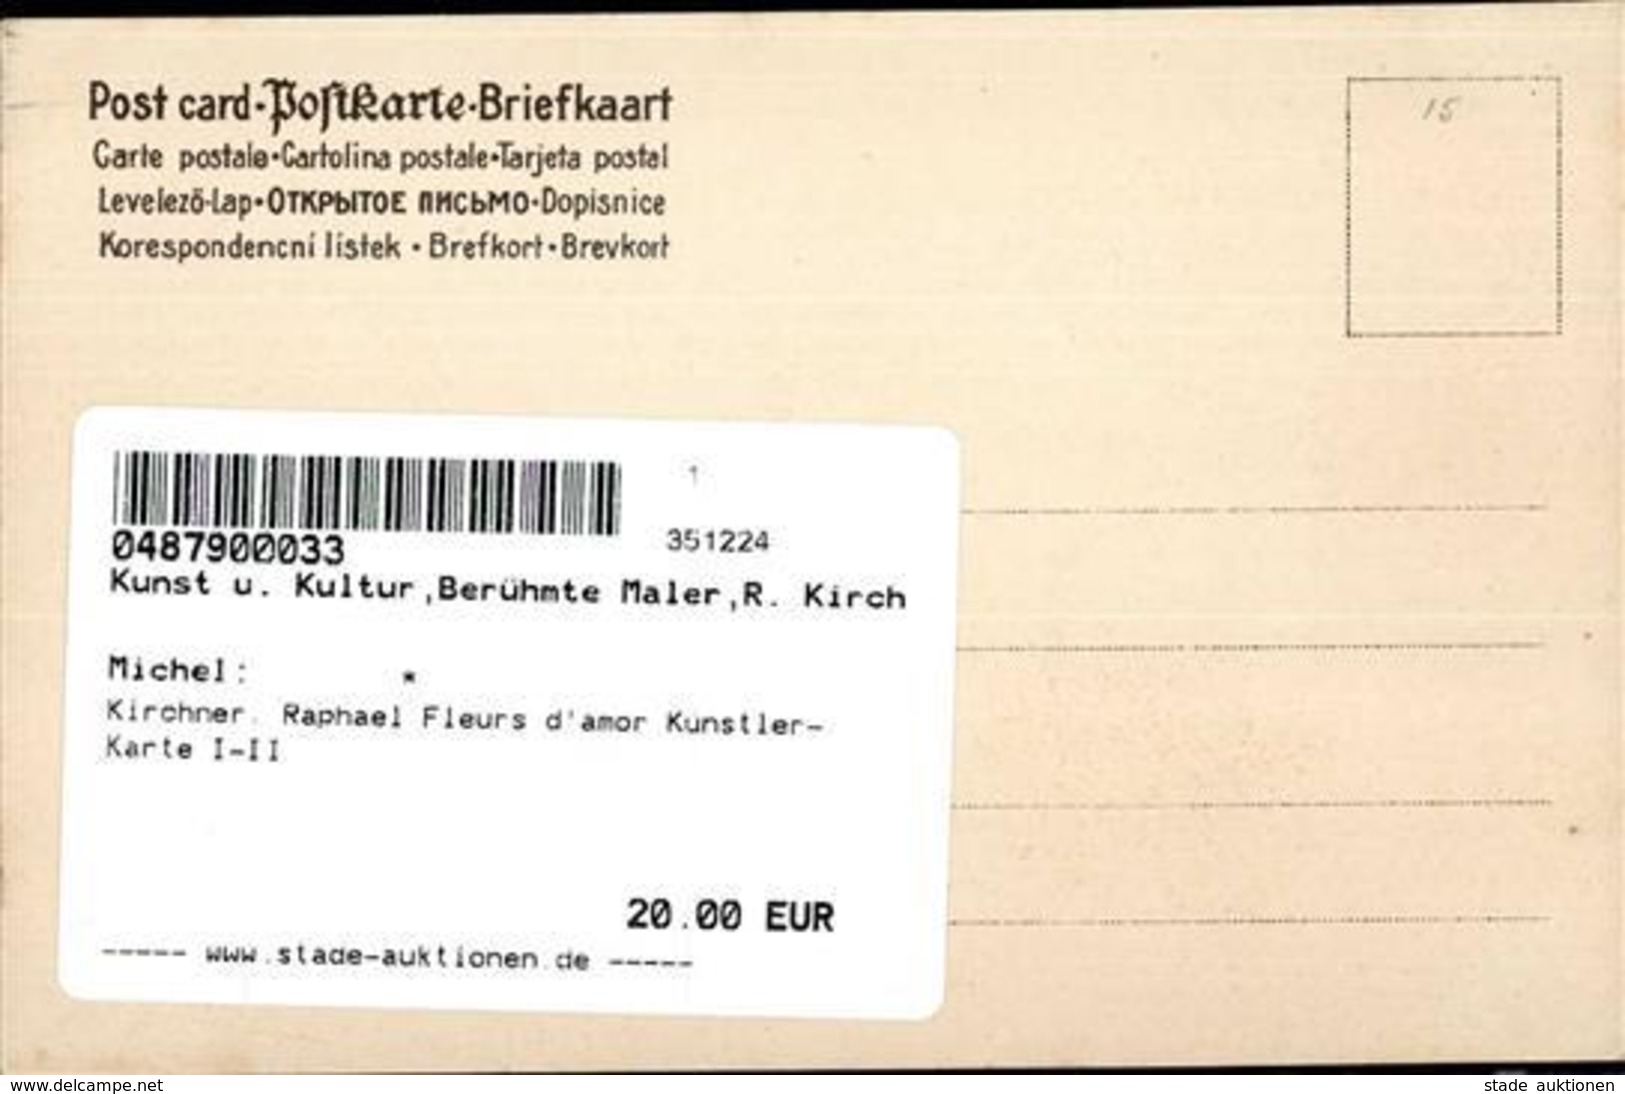 Kirchner, Raphael Fleurs D'amor Künstler-Karte I-II - Kirchner, Raphael